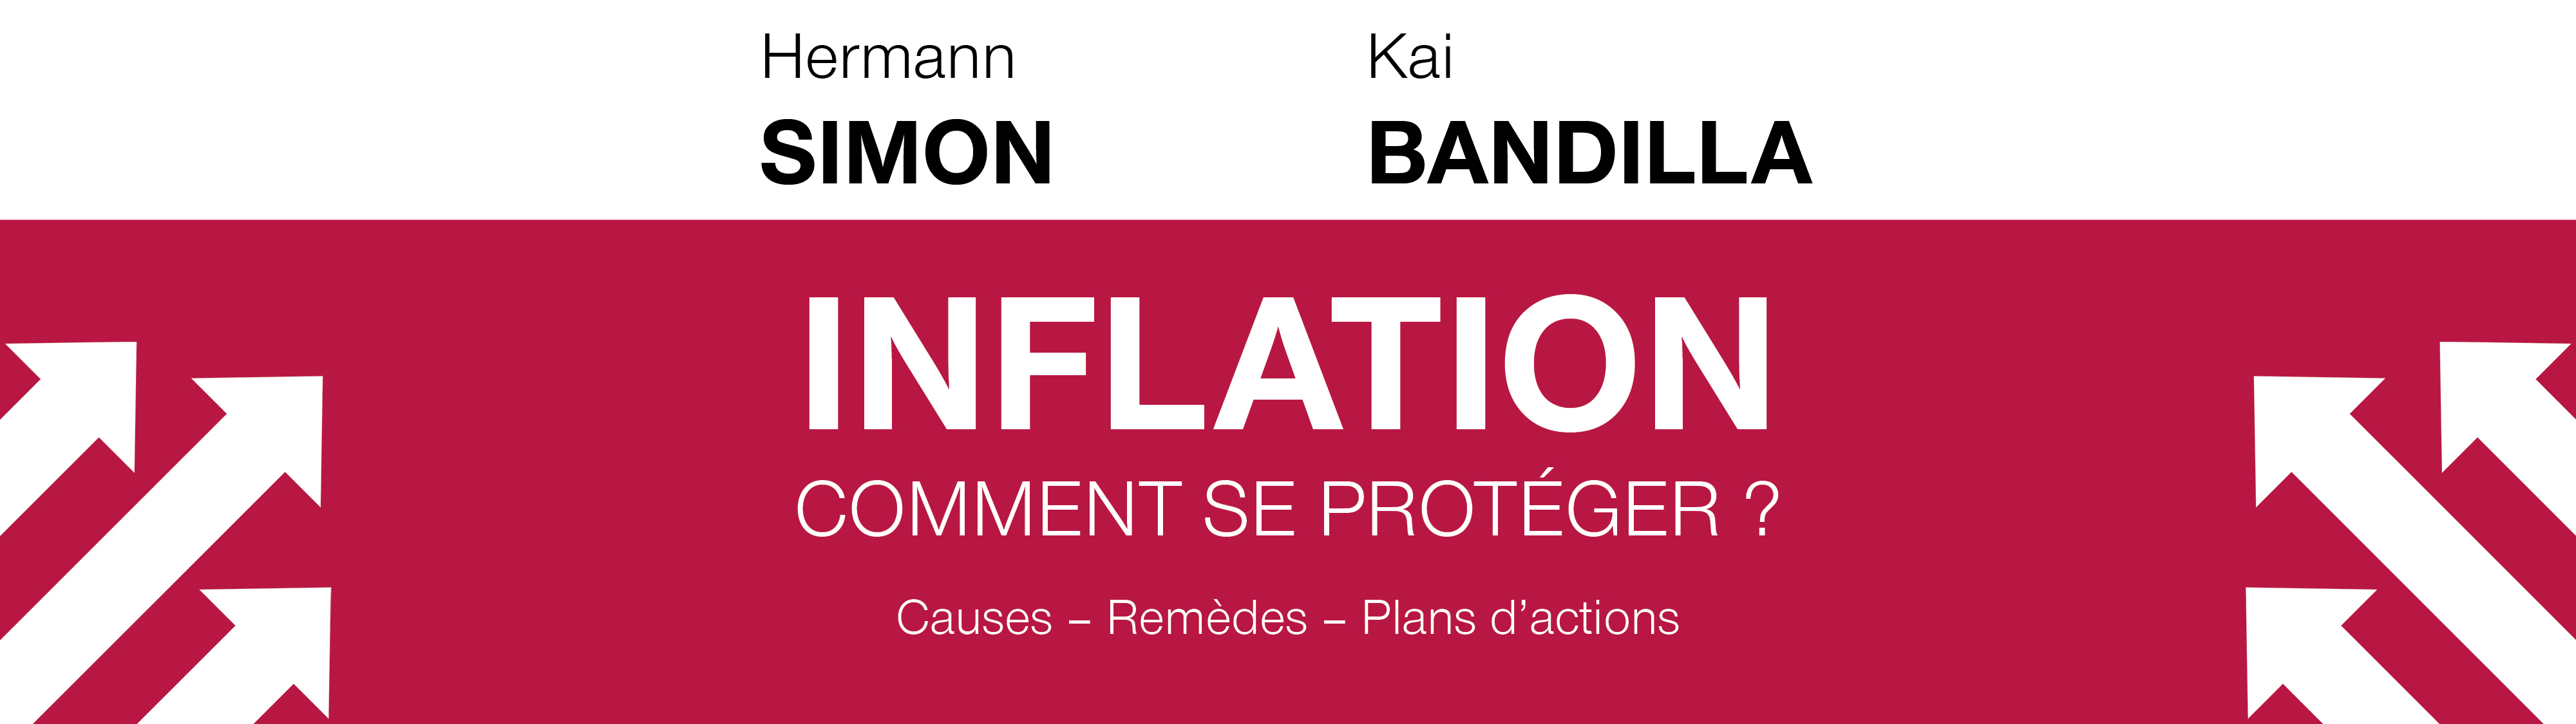 Inflation - Comment se protéger ? Simon H. & Bandilla K.